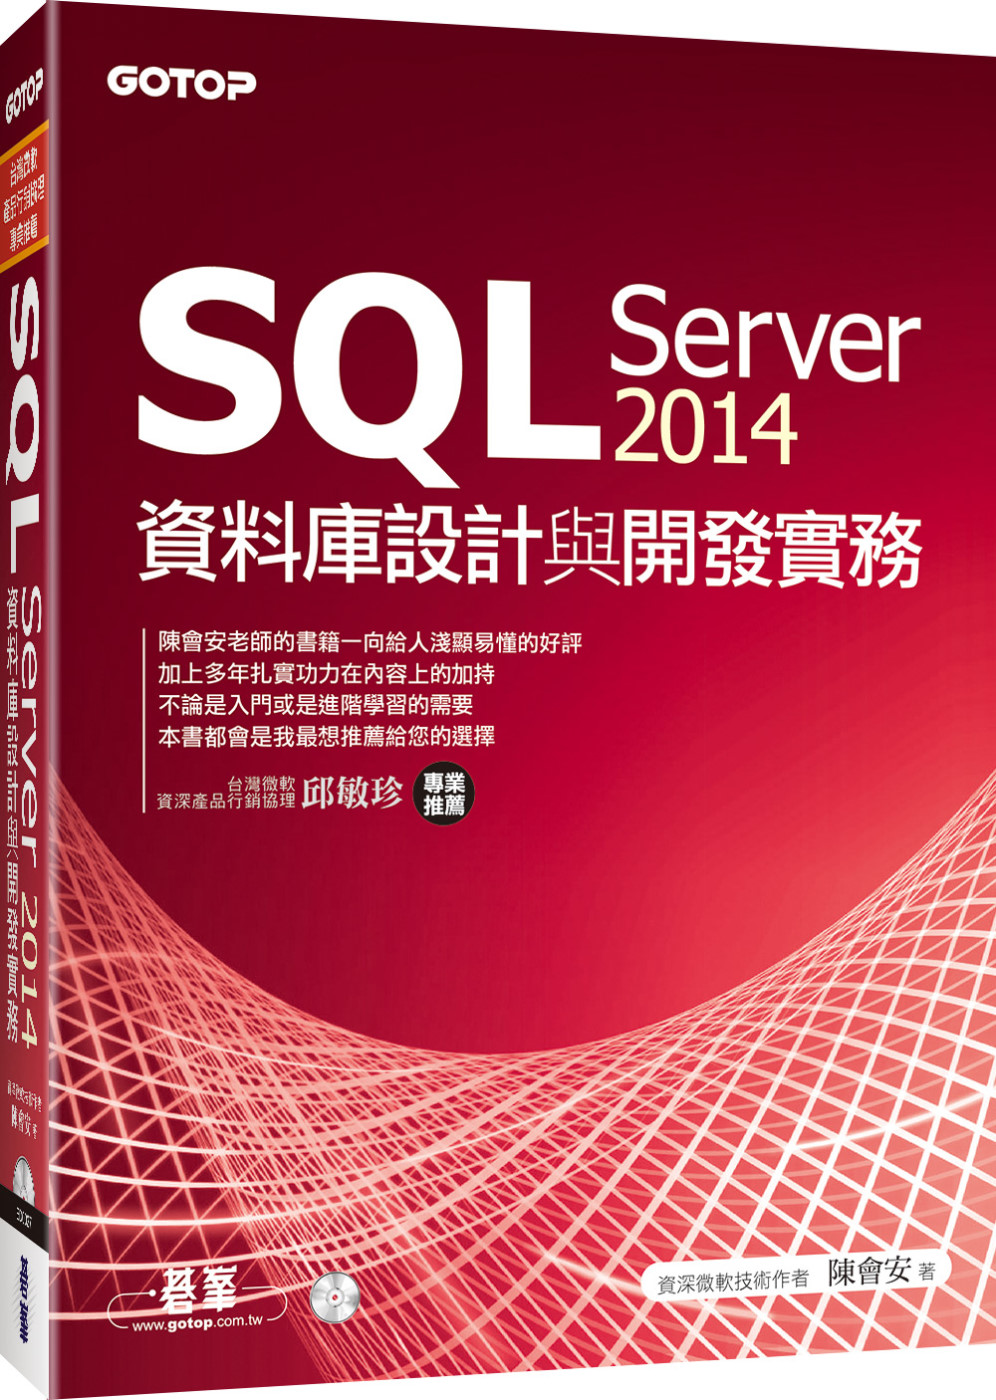 SQL Server 2014資料庫設計與開發實務(附T-SQL範例檔、資料庫檔光碟)